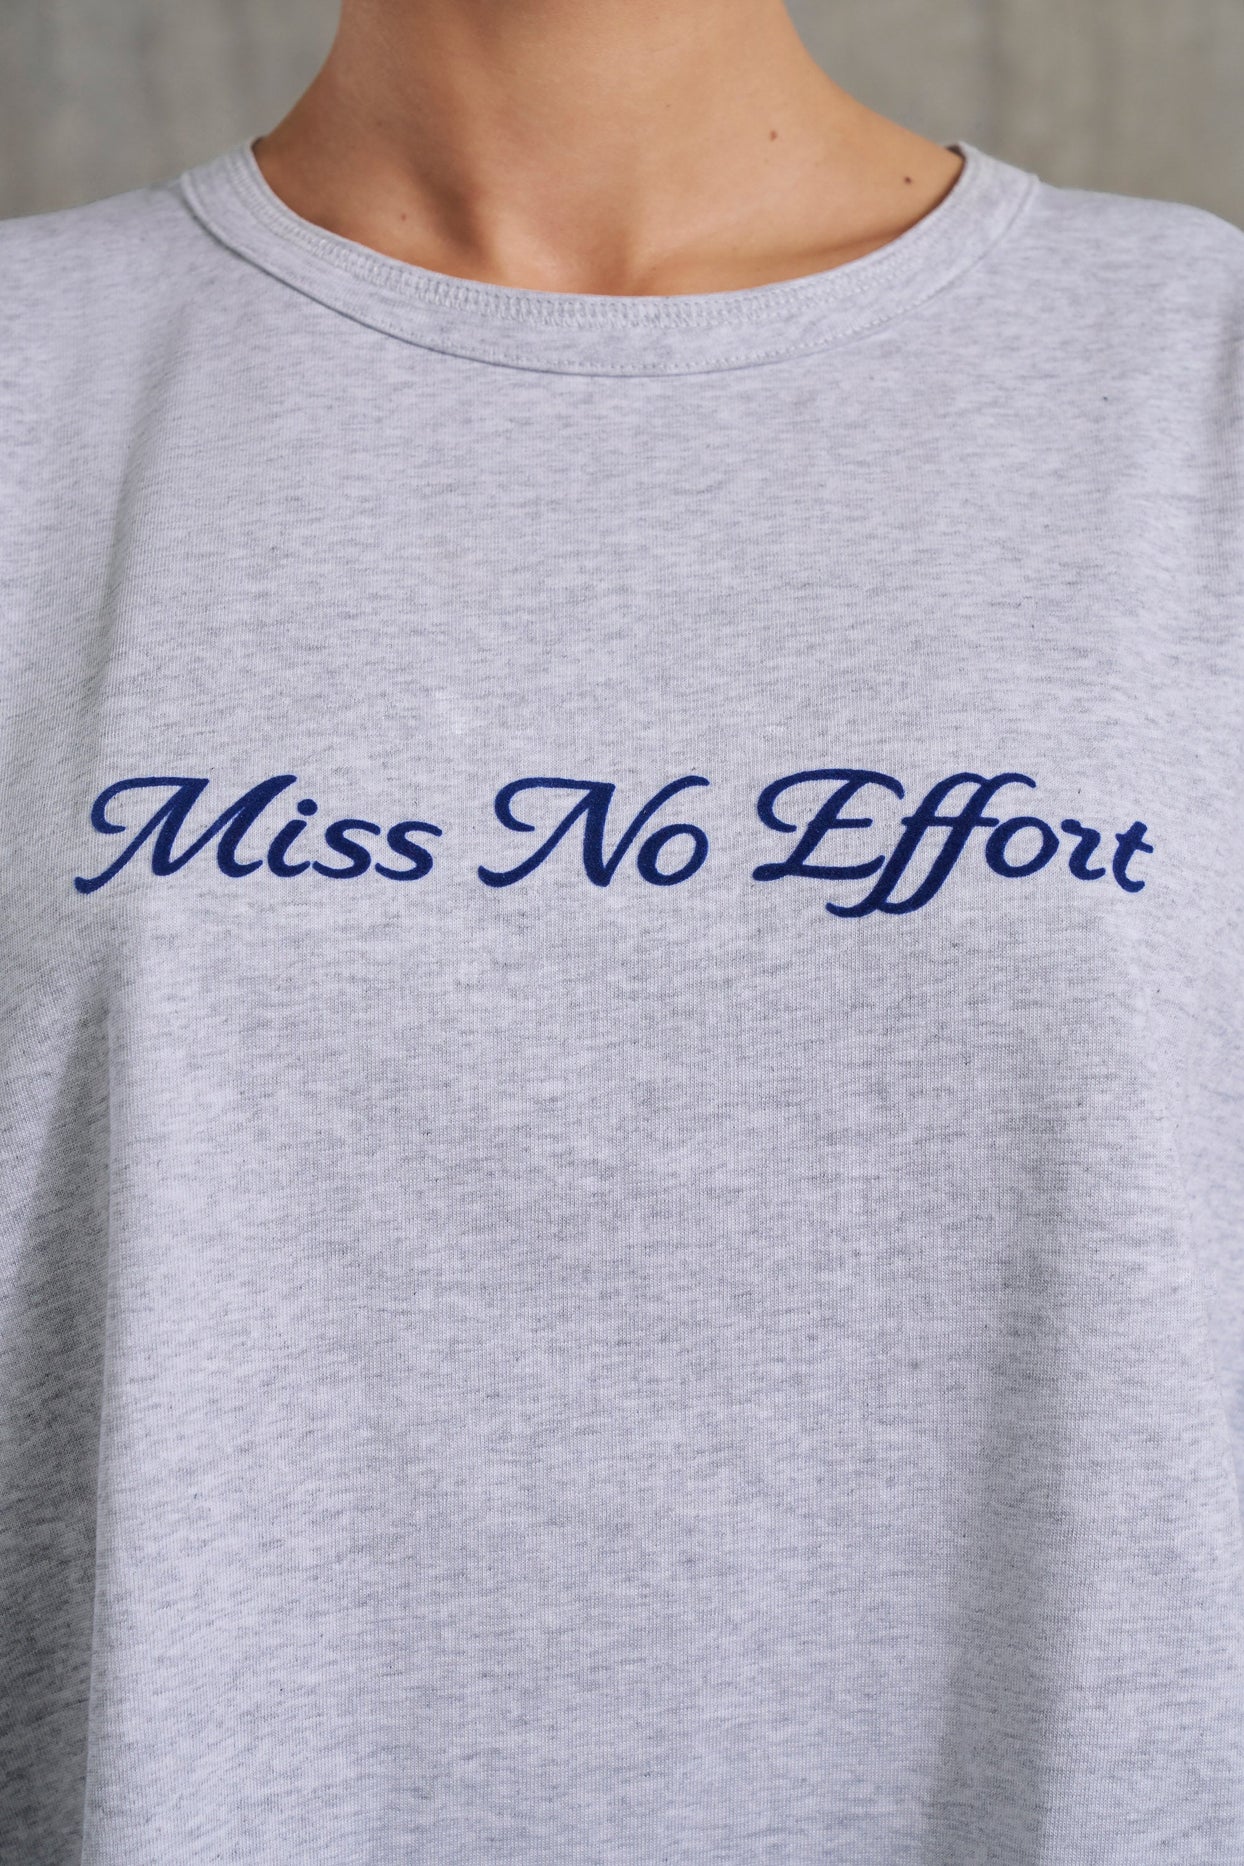 Camiseta extragrande con eslogan en gris jaspeado